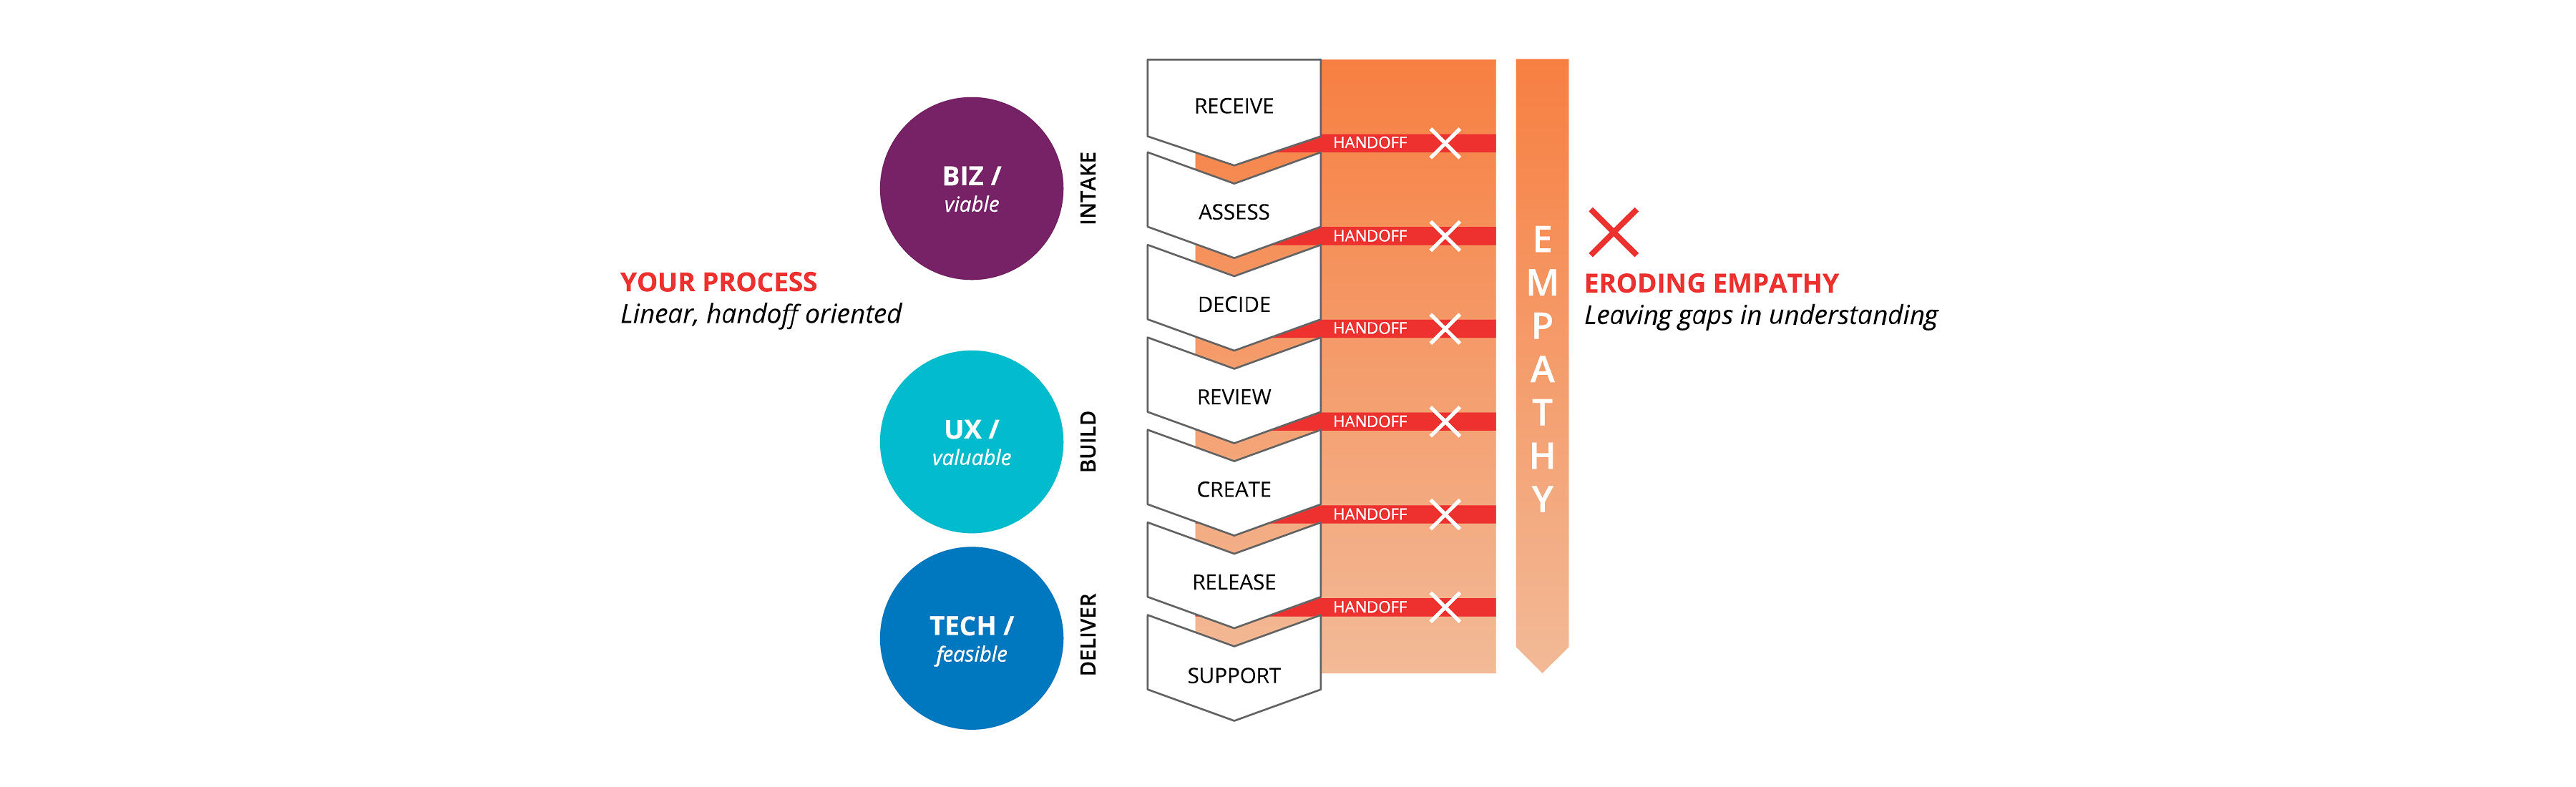 一个线性的，以传递为导向的过程:创新的镜头在左边用圆圈表示，从Biz/可行，UX/有价值，最后是Tech/可行。图的中间部分指示了过程的各个阶段:业务吸收(接收、评估、决定)、UX构建(审查、创建)和技术交付(创建、发布、支持)。这些加工阶段的划分用间隔和一系列的方框表示。在右边，箭头上写着“同理心”。这些过程和箭头都充满了梯度，表明移情和理解被这些面向切换的过程侵蚀了。